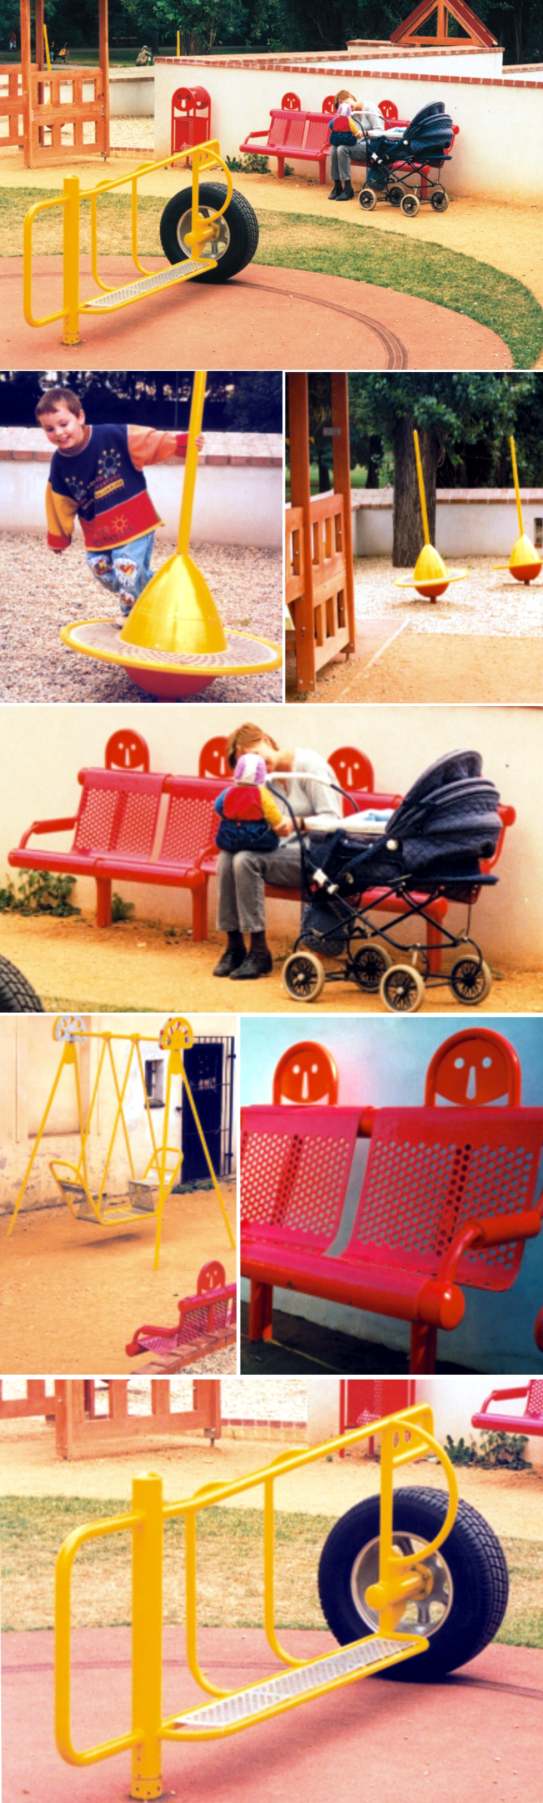 Luděk Pavézka - mobiliář - dětská hřiště